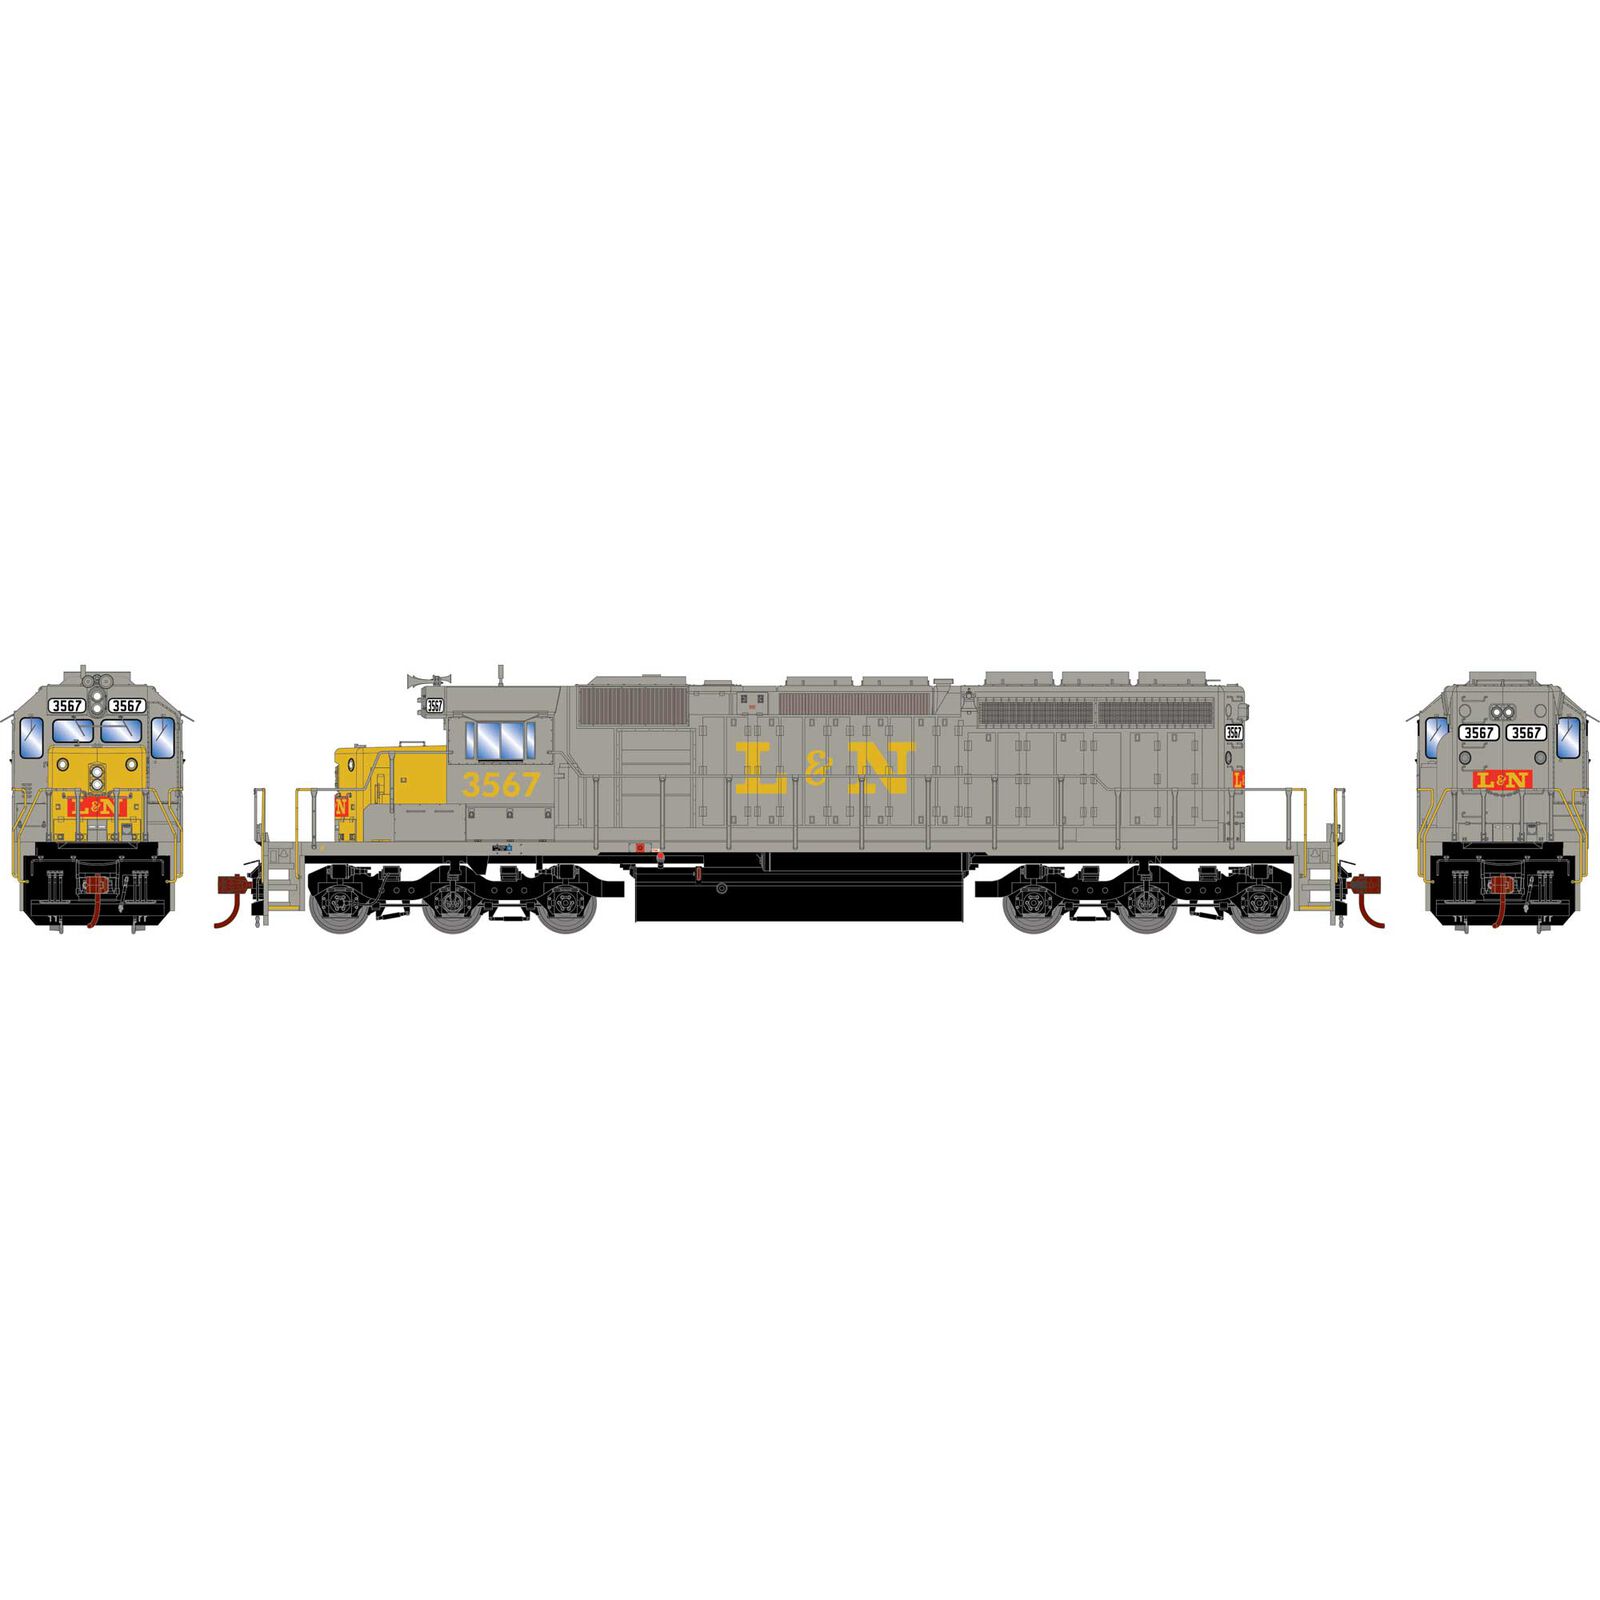 HO EMD SD40-2 Locomotive with DCC & Sound, LN #3567